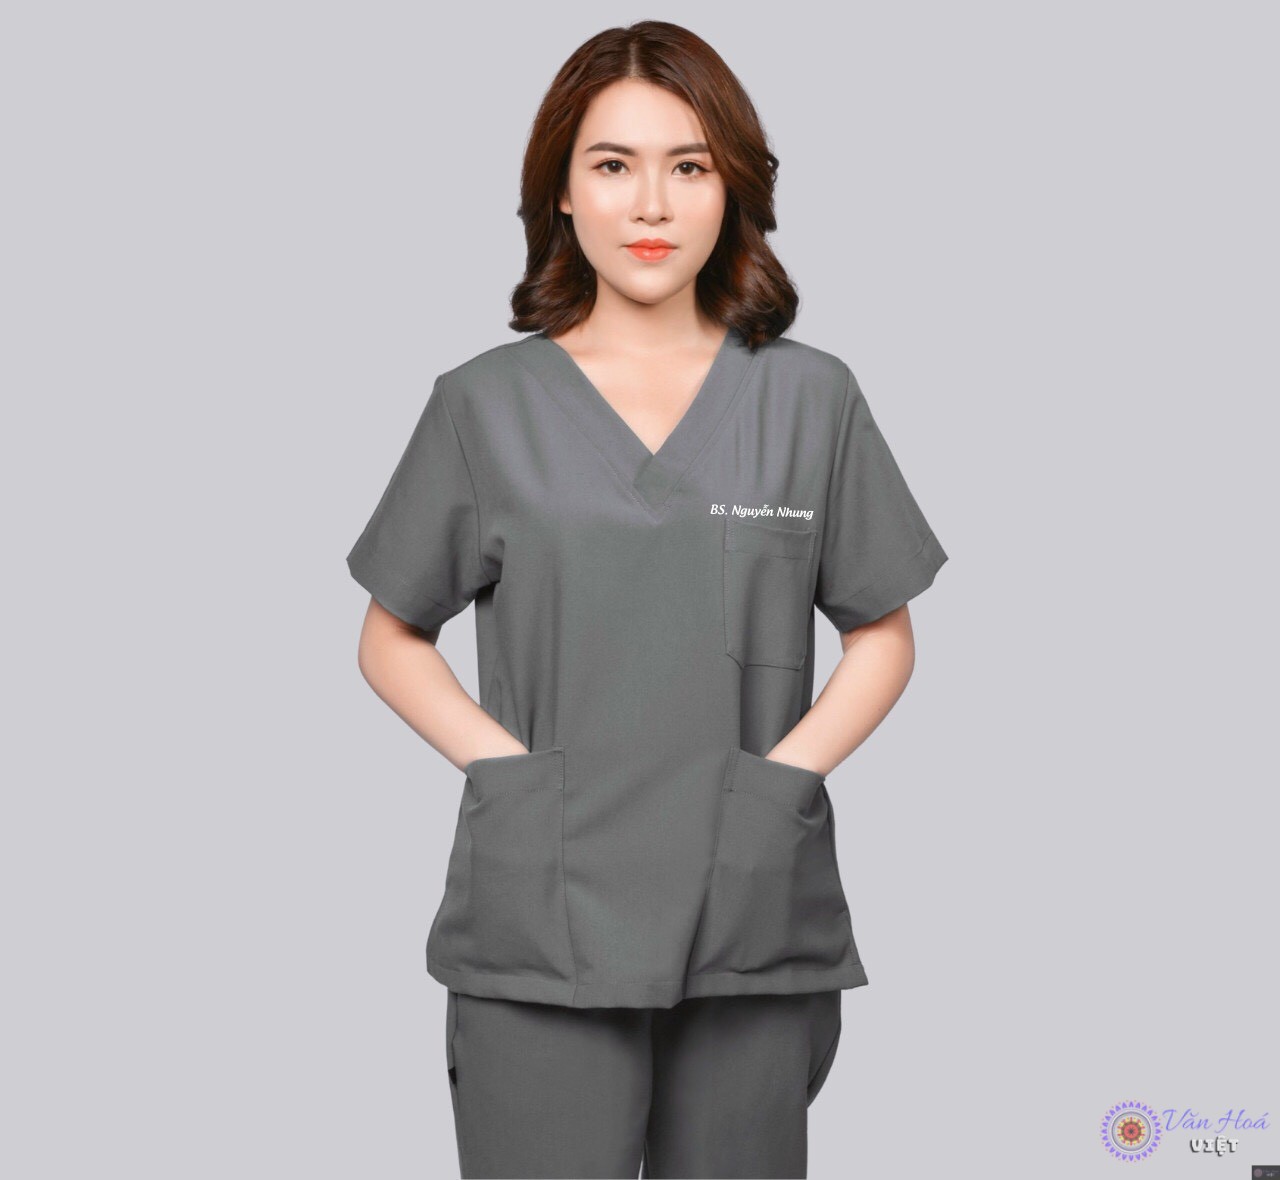 Bác sĩ da liễu Nguyễn Nhung